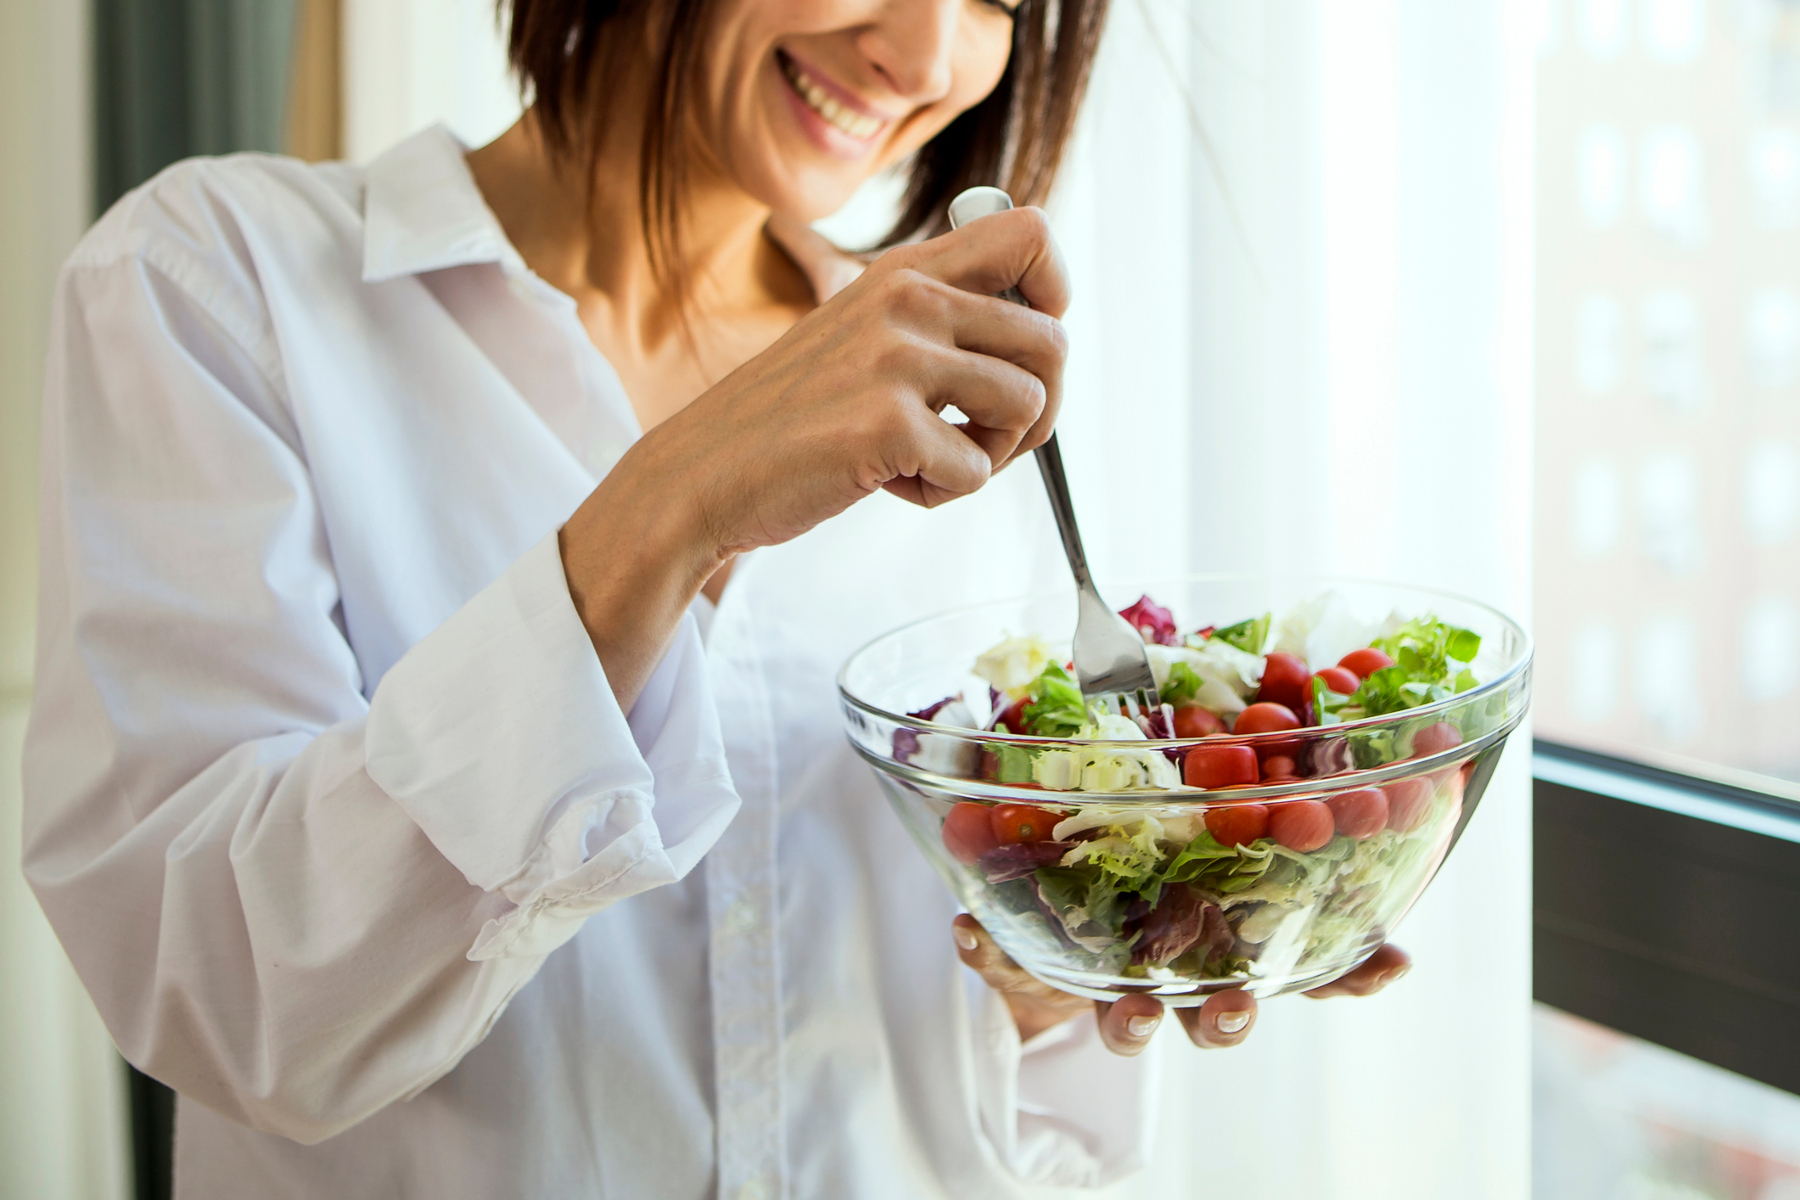 Σαλάτα: Γιατί οι σαλάτες πρέπει να αποτελούν καθημερινό γεύμα σας;